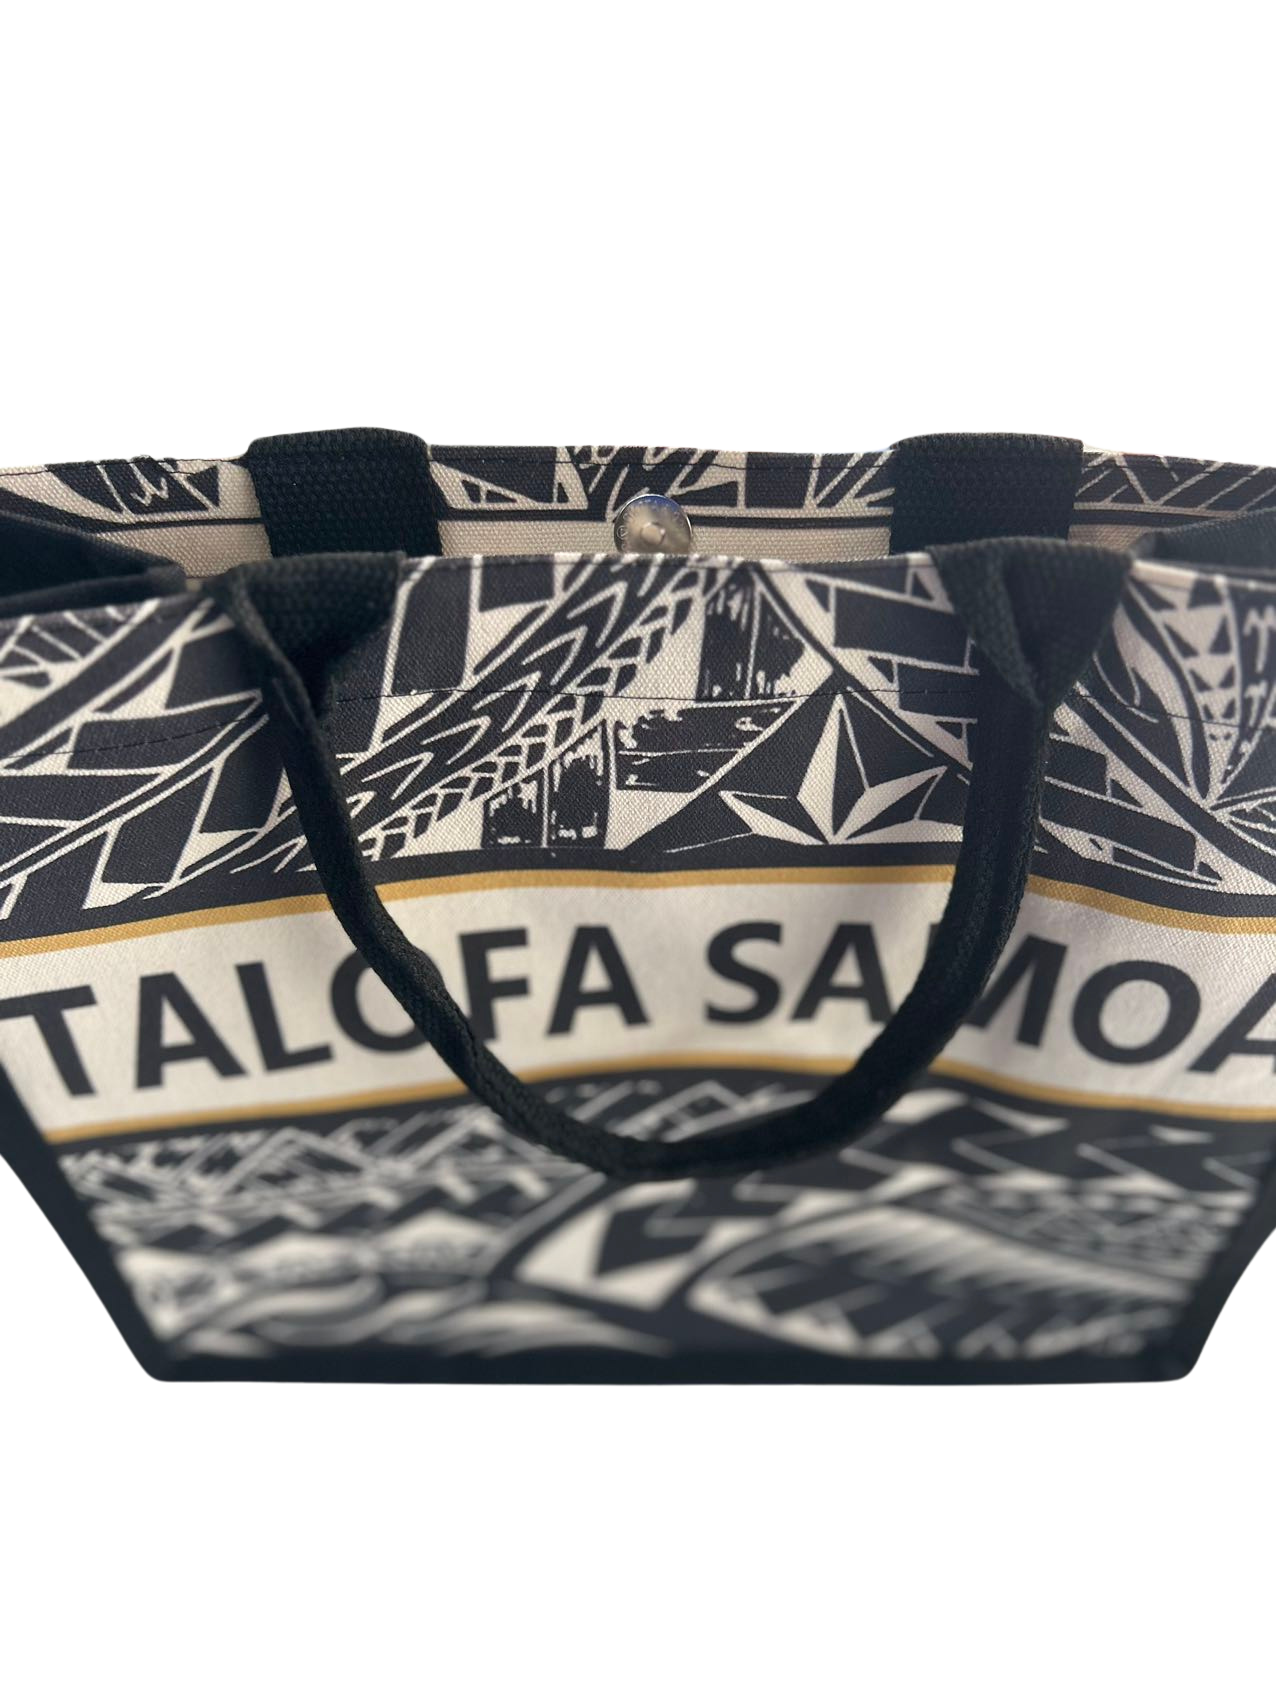 TALOFA SAMOA Canvas Two-Tone Bag Designed By Victor Chen